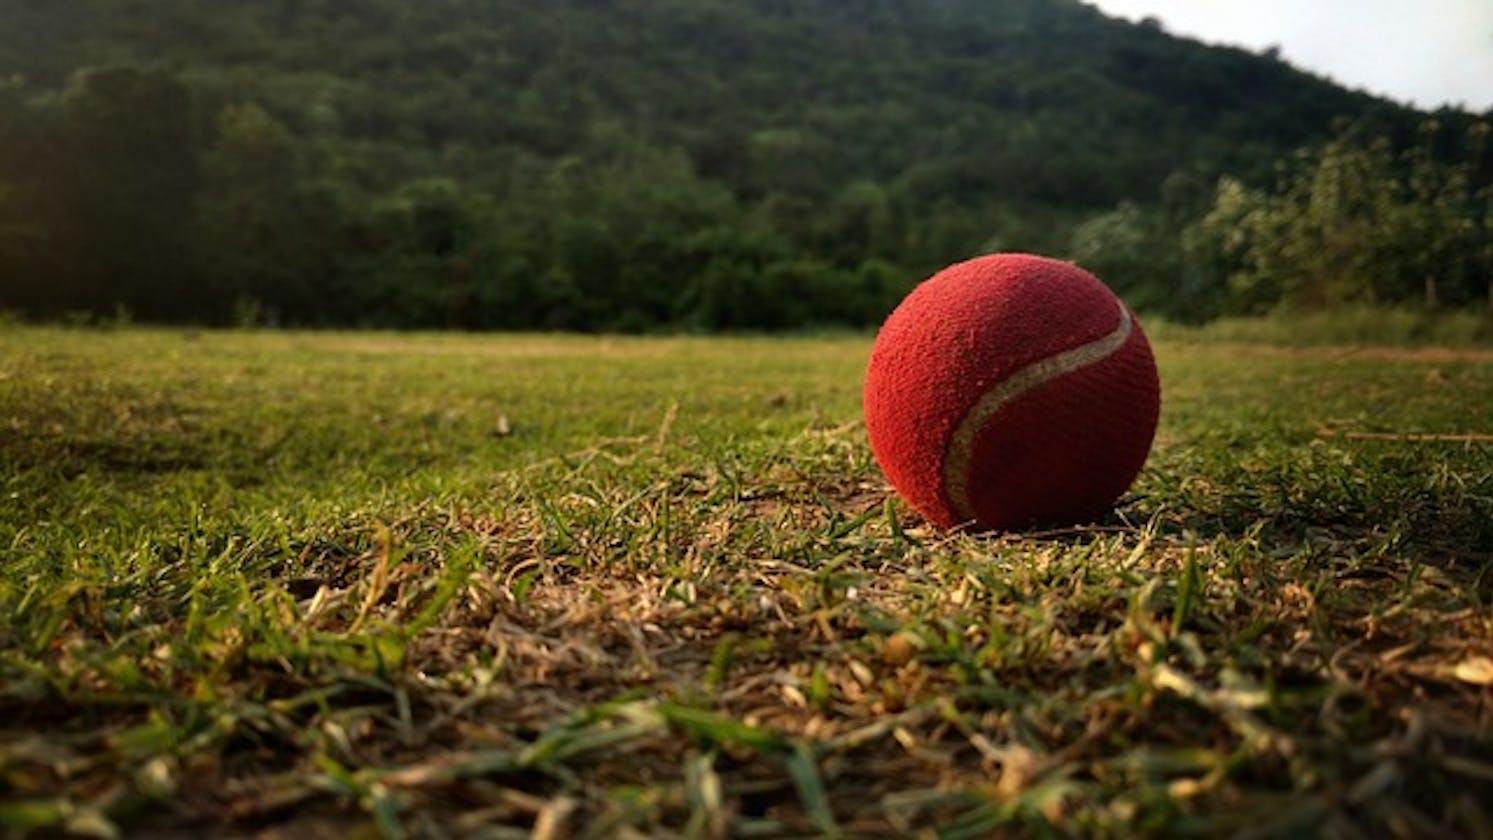 U Zaw Win Swe: A Cricket Maestro's Journey